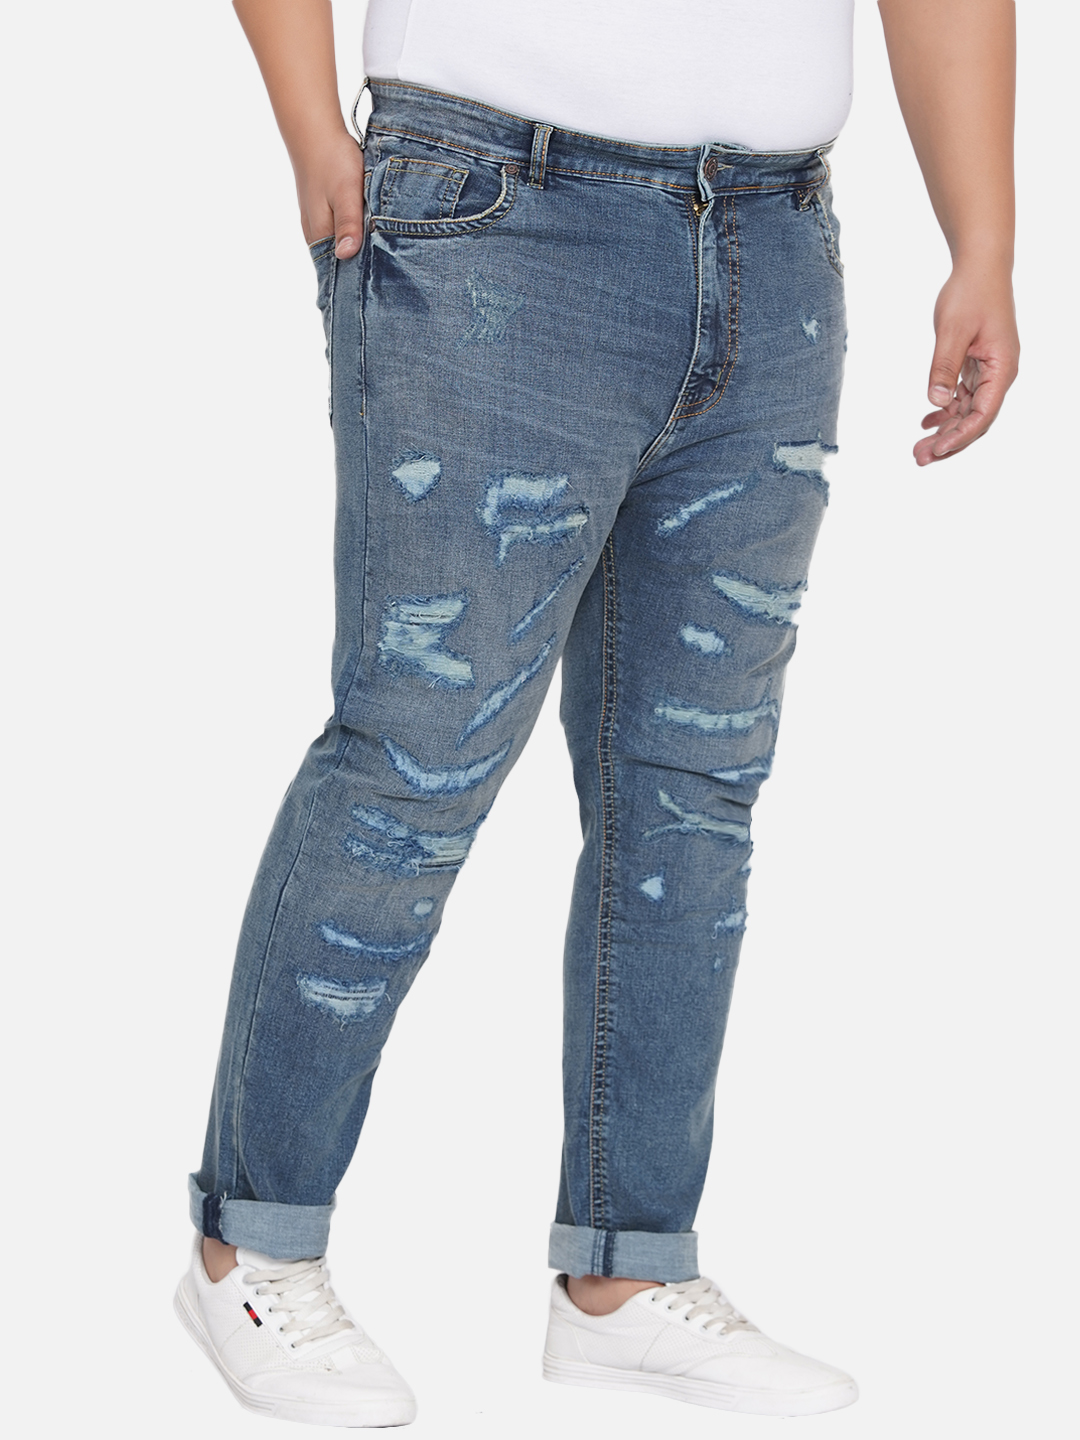 bottomwear/jeans/JPJ12201/jpj12201-3.jpg